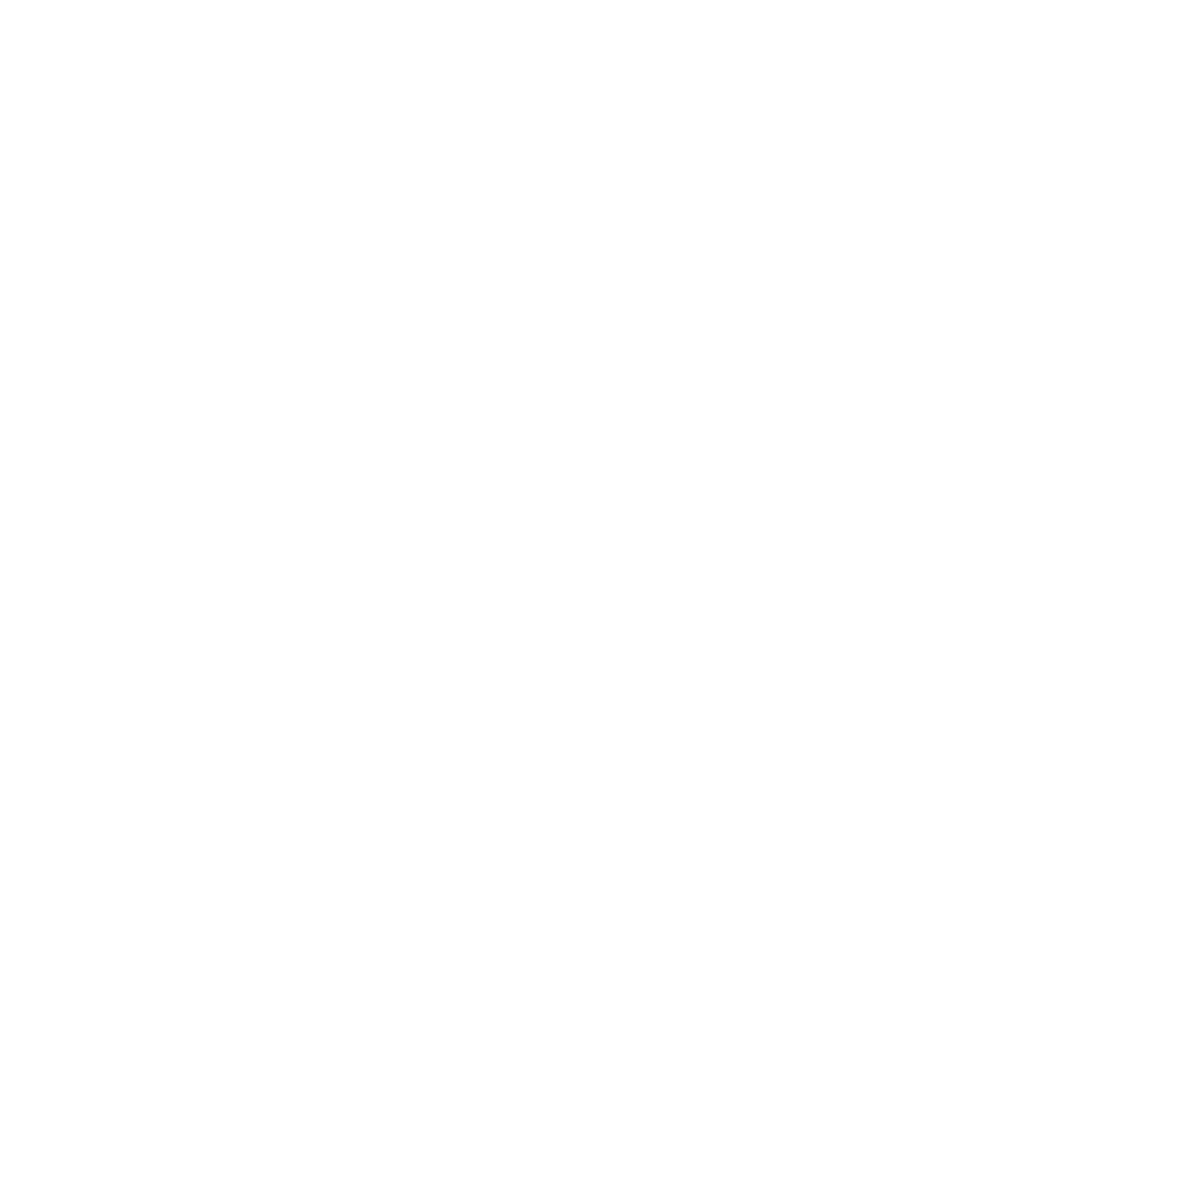 Bayer Group